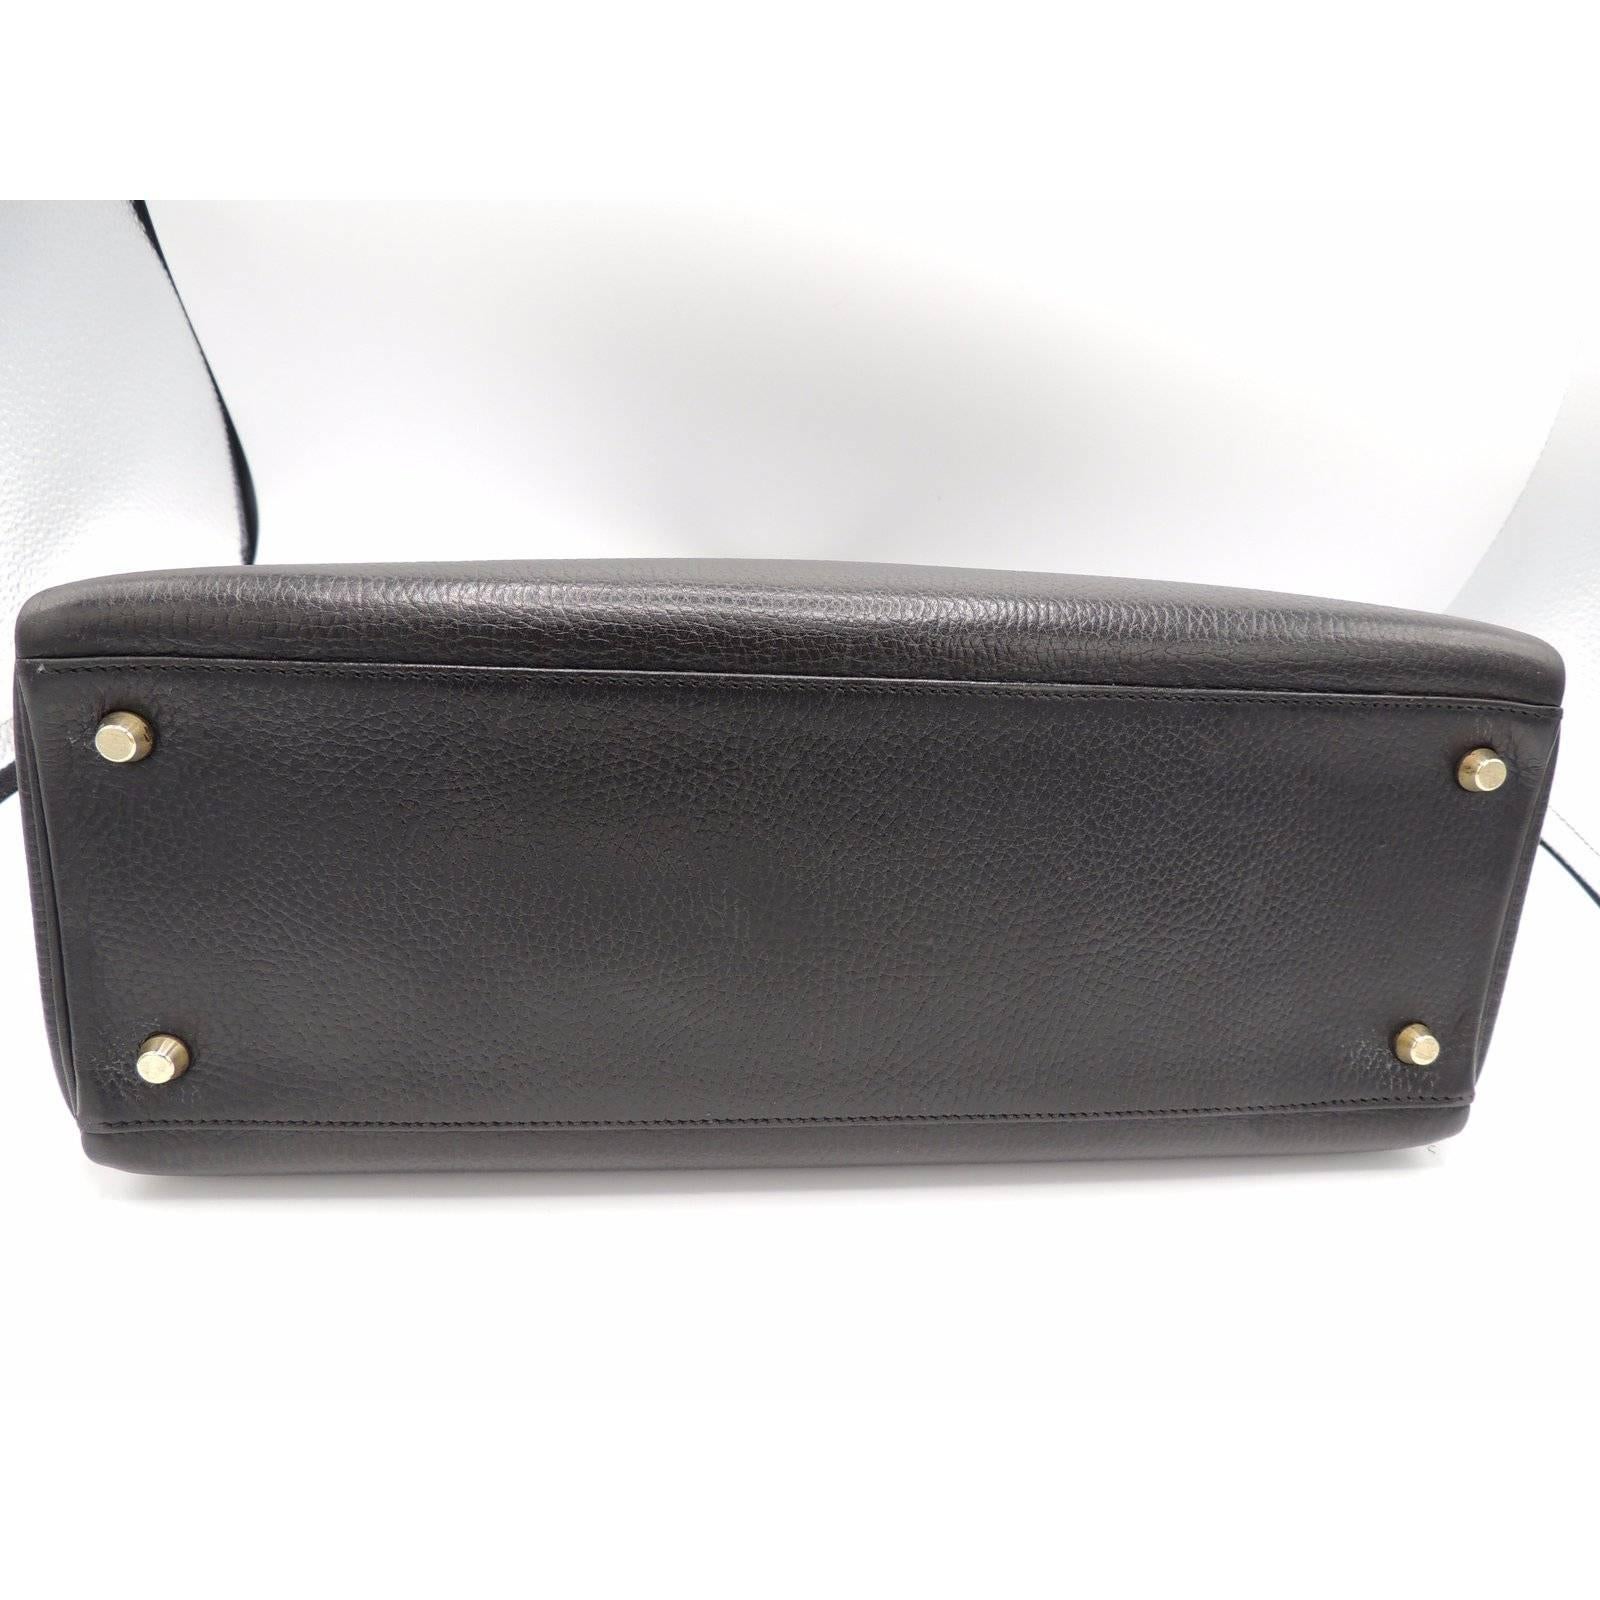 Women's Hermes Vintage Kelly Bag Ardennes Black Leather Gold Hardware 35 cm